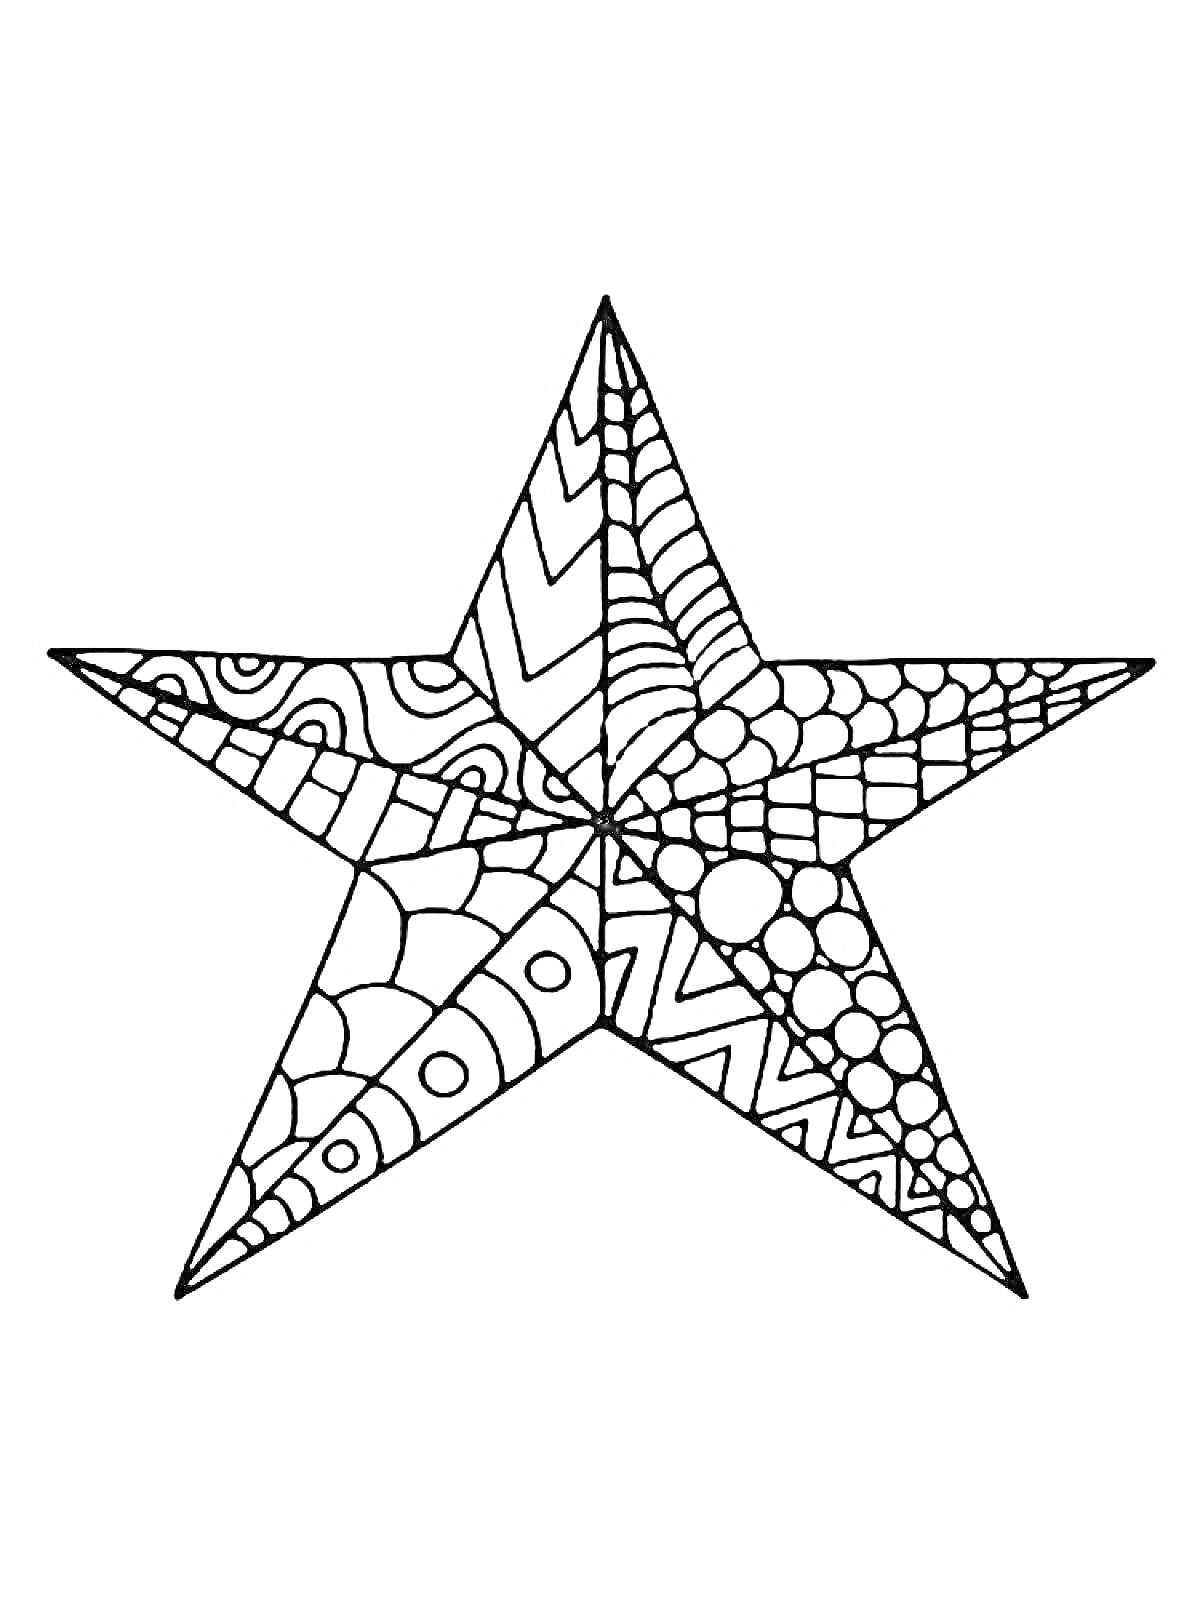 Раскраска Раскраска звезда с узорами и абстрактными элементами: линии, круги, зигзаги